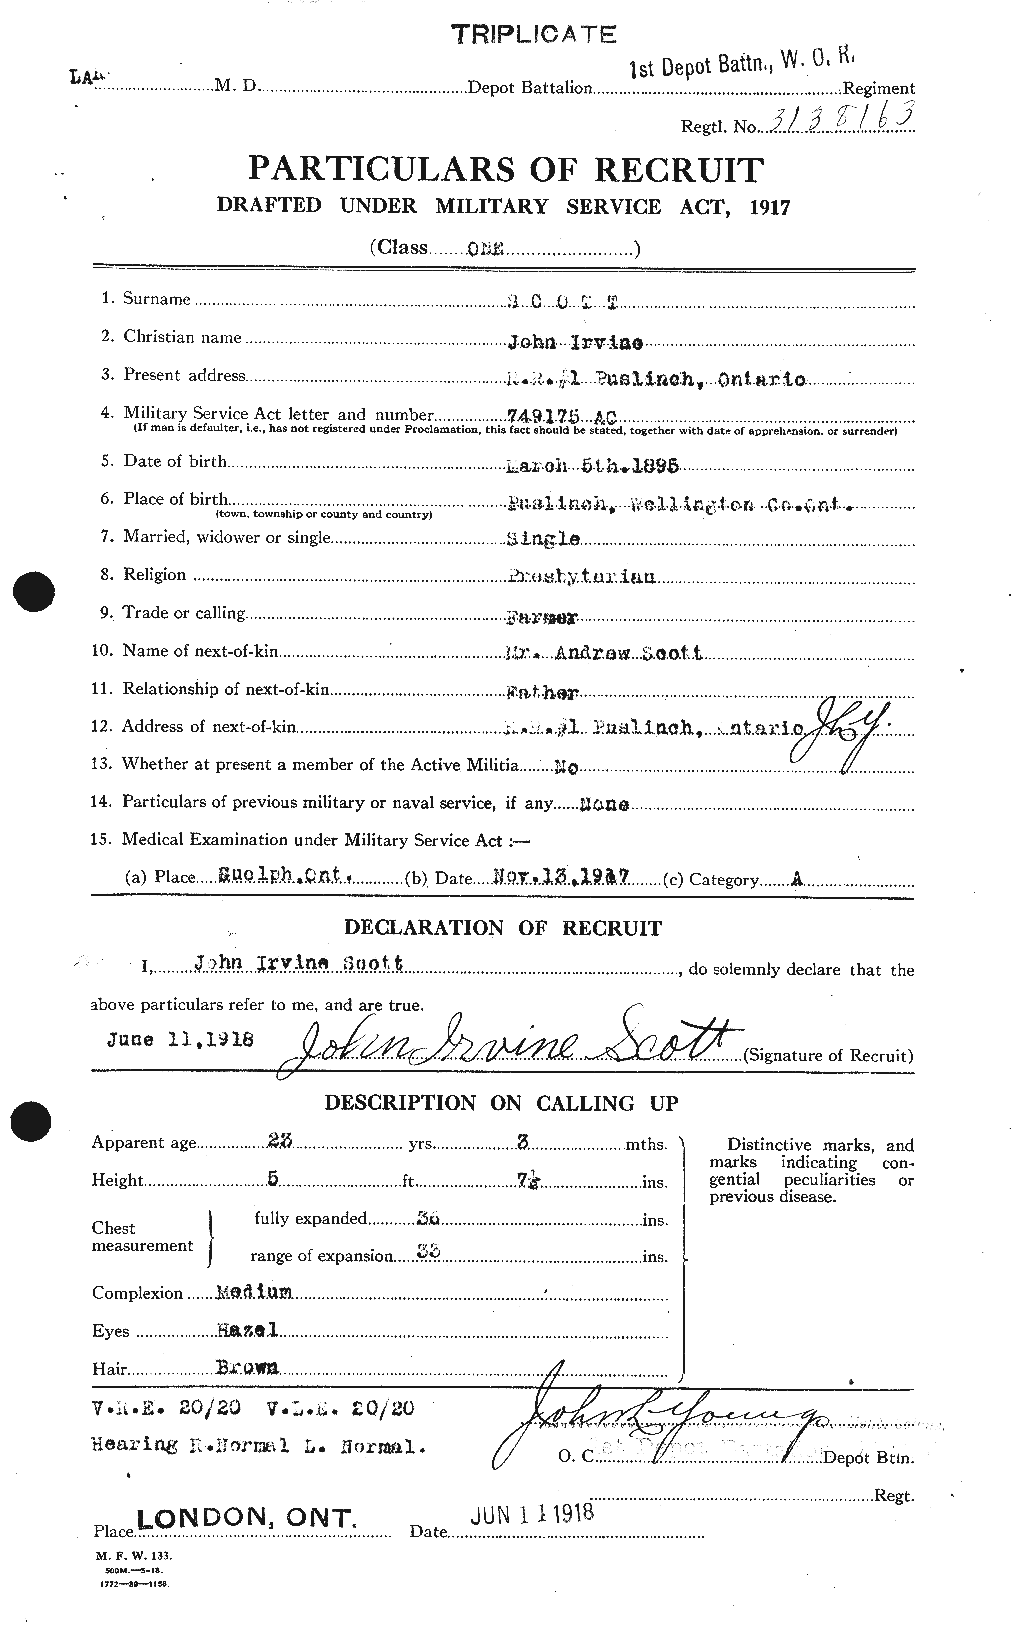 Dossiers du Personnel de la Première Guerre mondiale - CEC 084453a